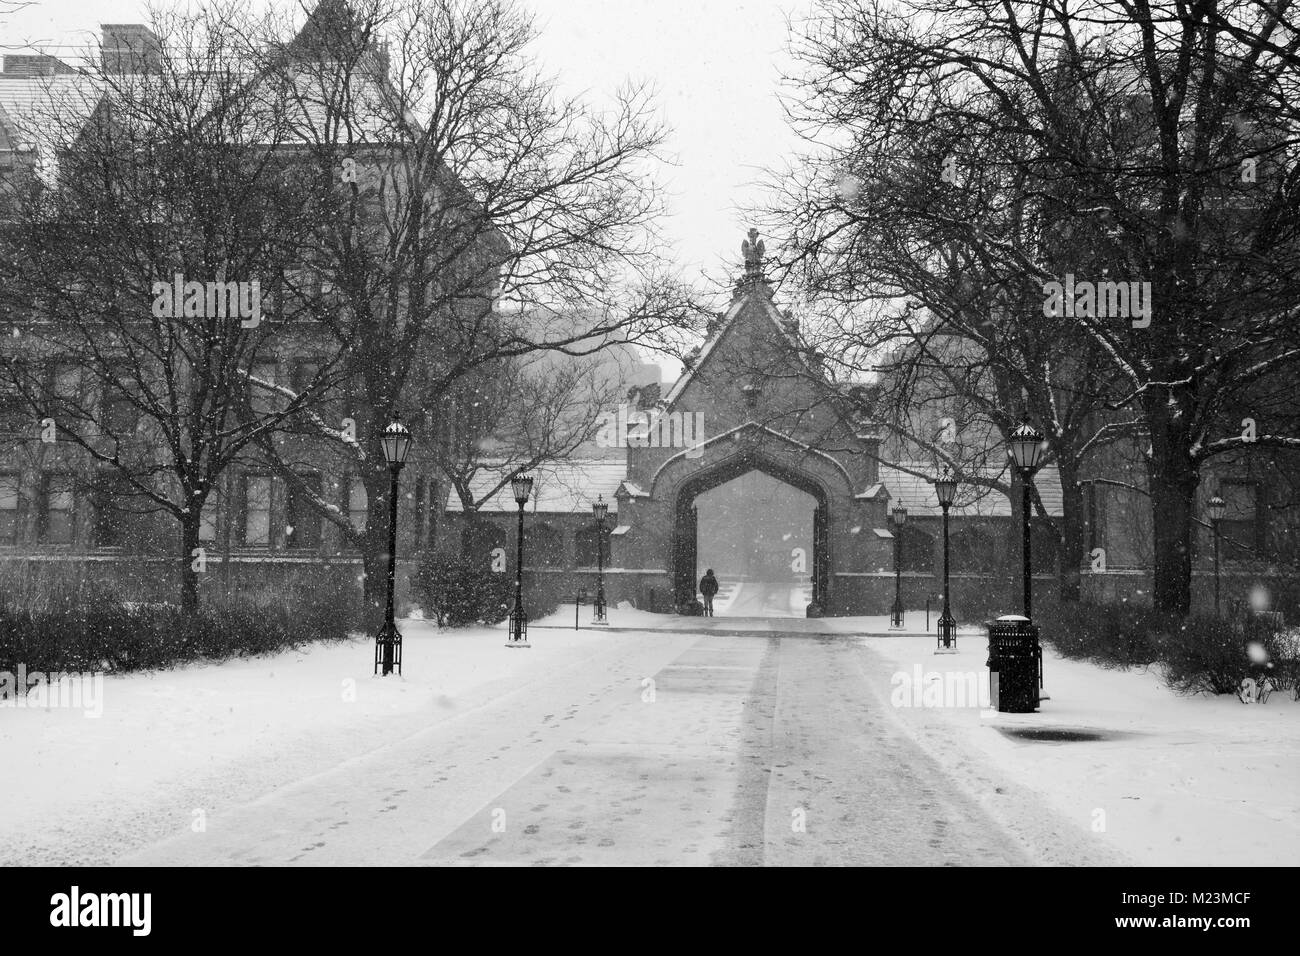 L'iconico Gate Cobb presso l'Università di Chicago conduce in uno dei campus Quads ed è una delle strutture originali presso la scuola. Foto Stock